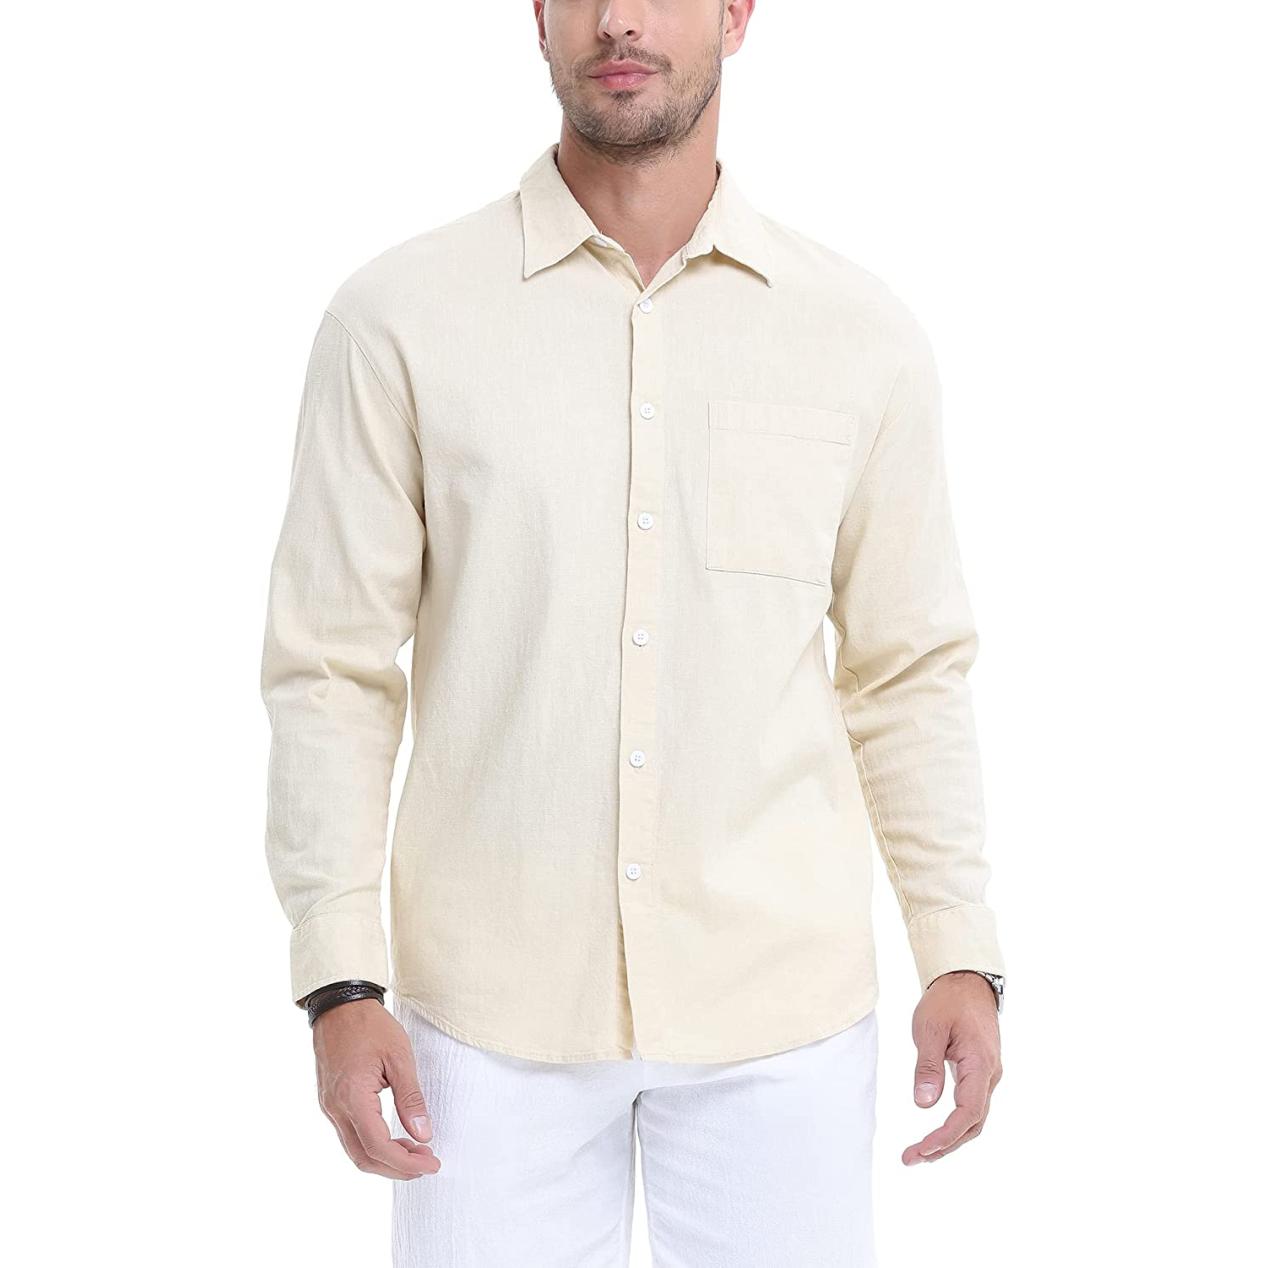 71thSDFpAQL. AC UL1500  750x1268 - 65% off MCEDAR Long Sleeve Linen-Blend Shirt for Men